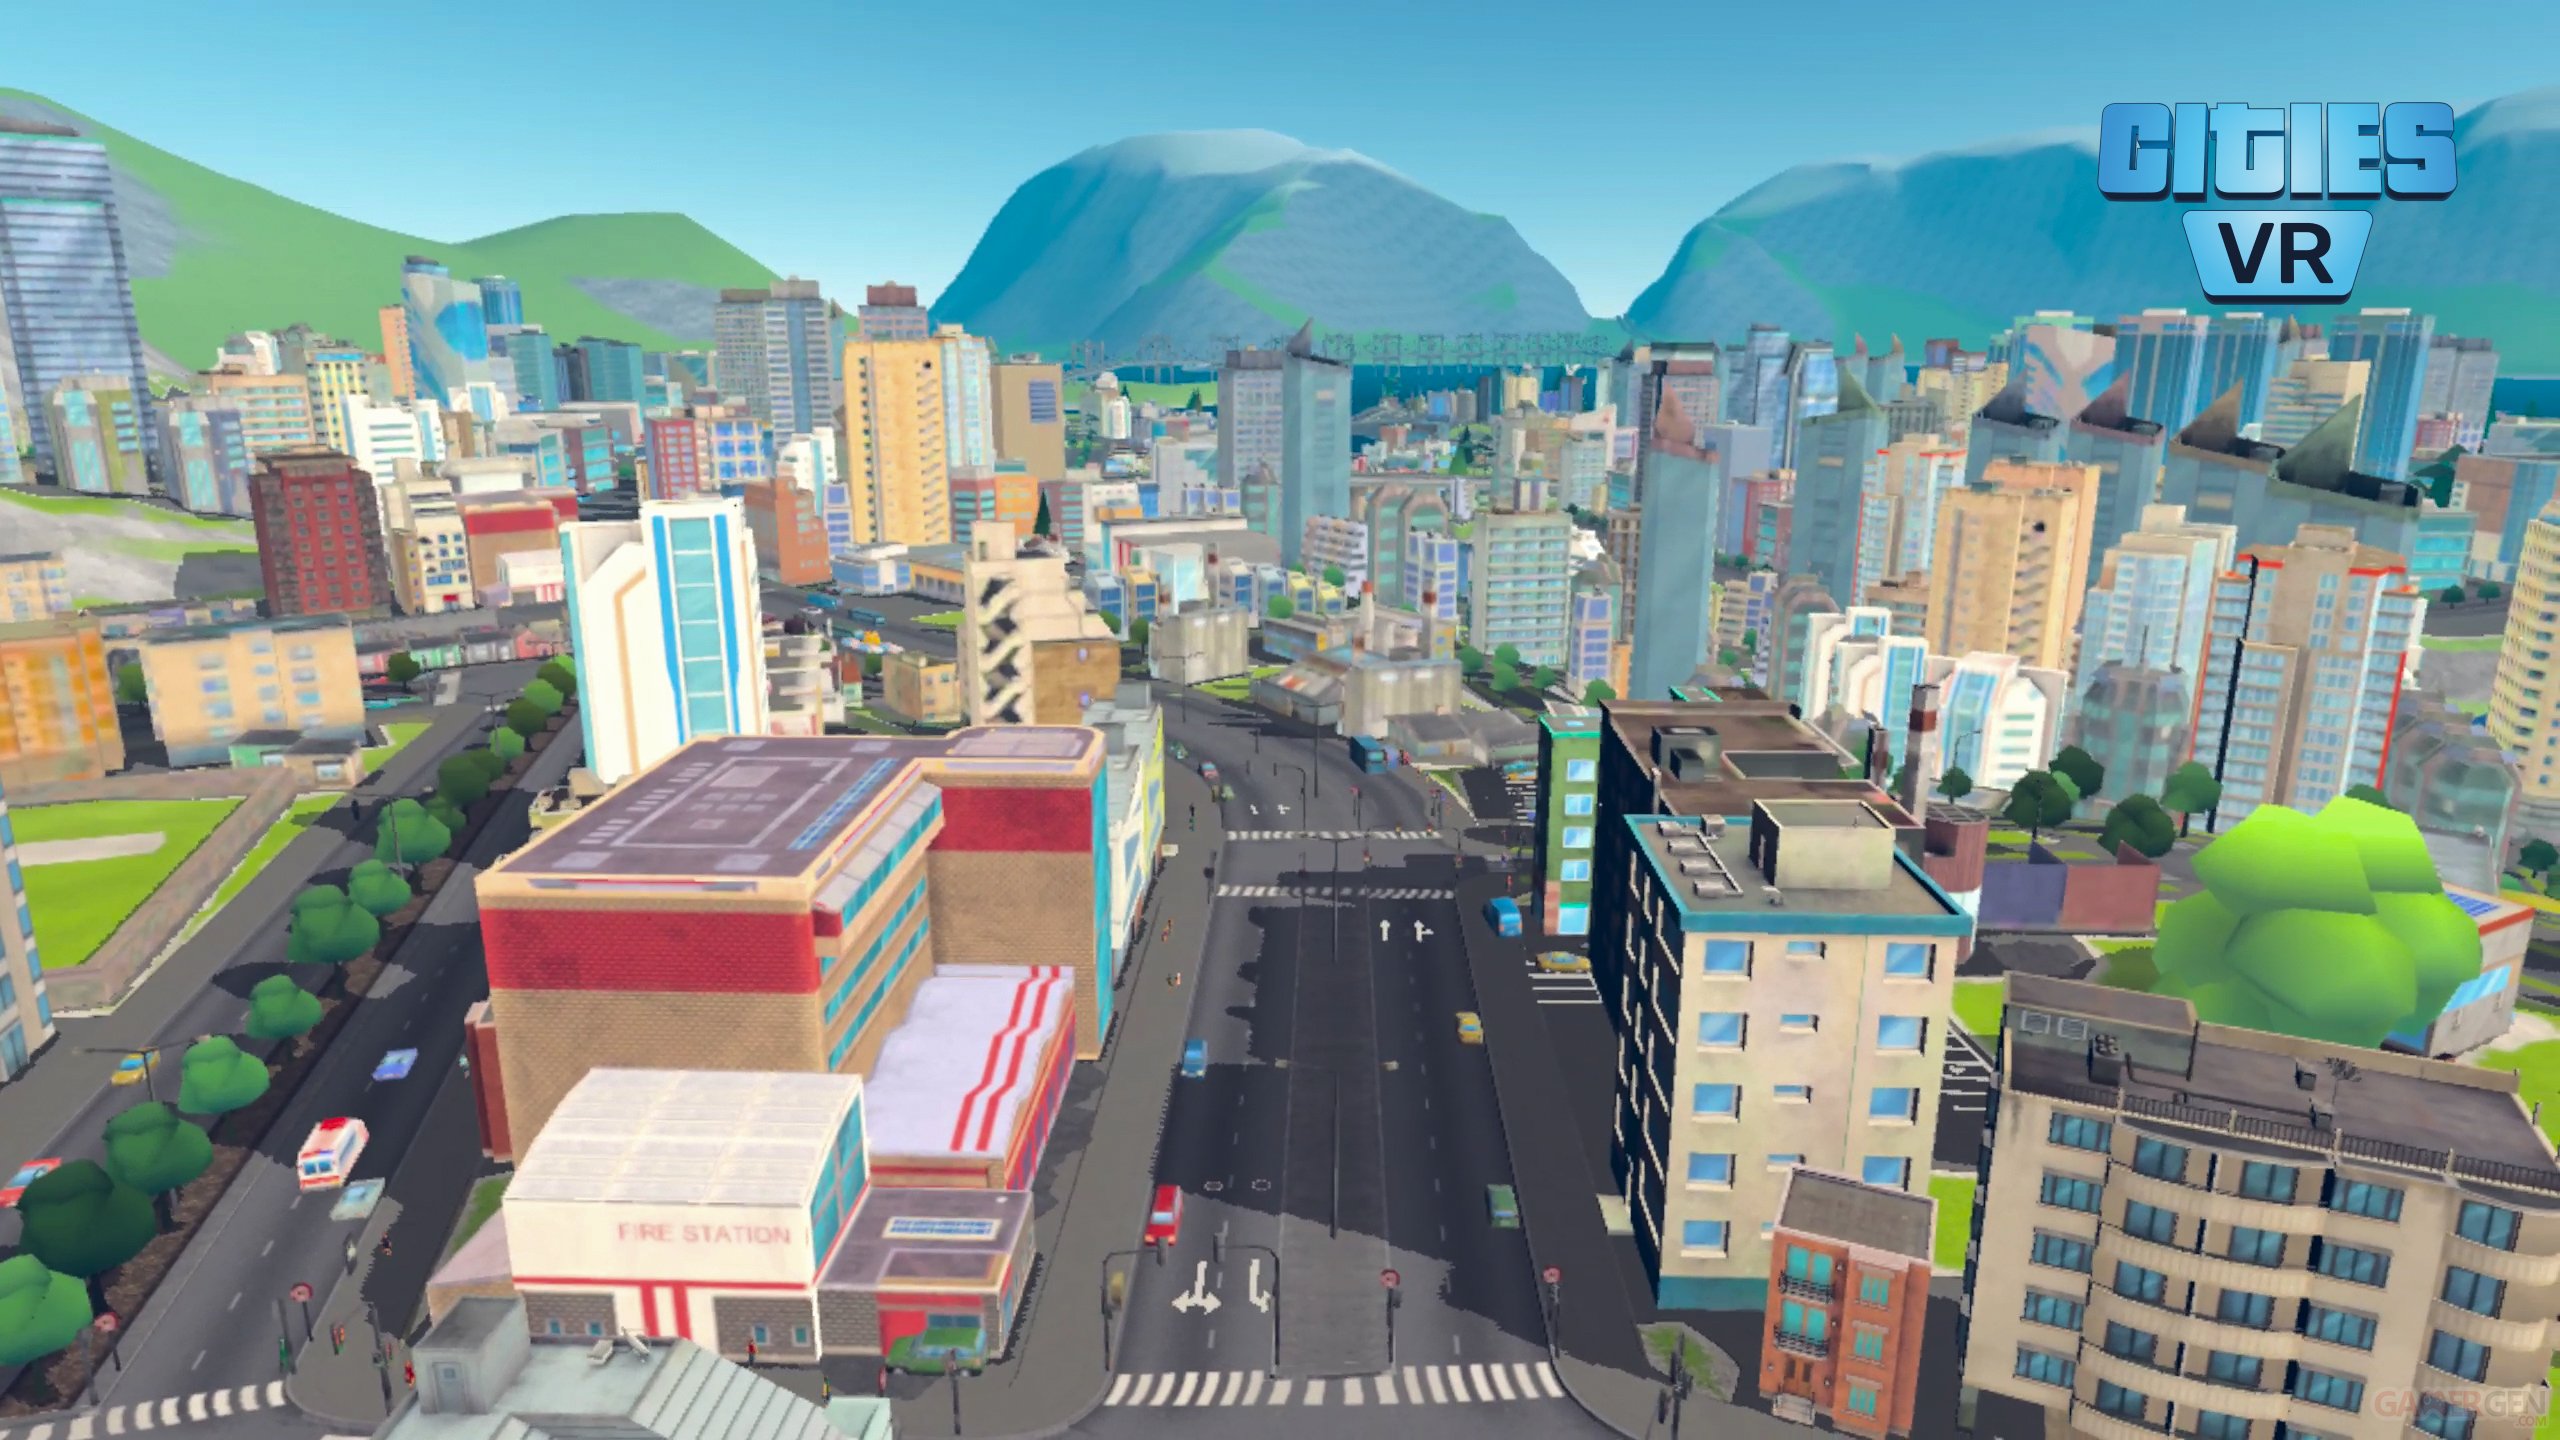 Vr город. VR небоскребы. Виртуальный город игра. Симс в России. Little Cities VR.